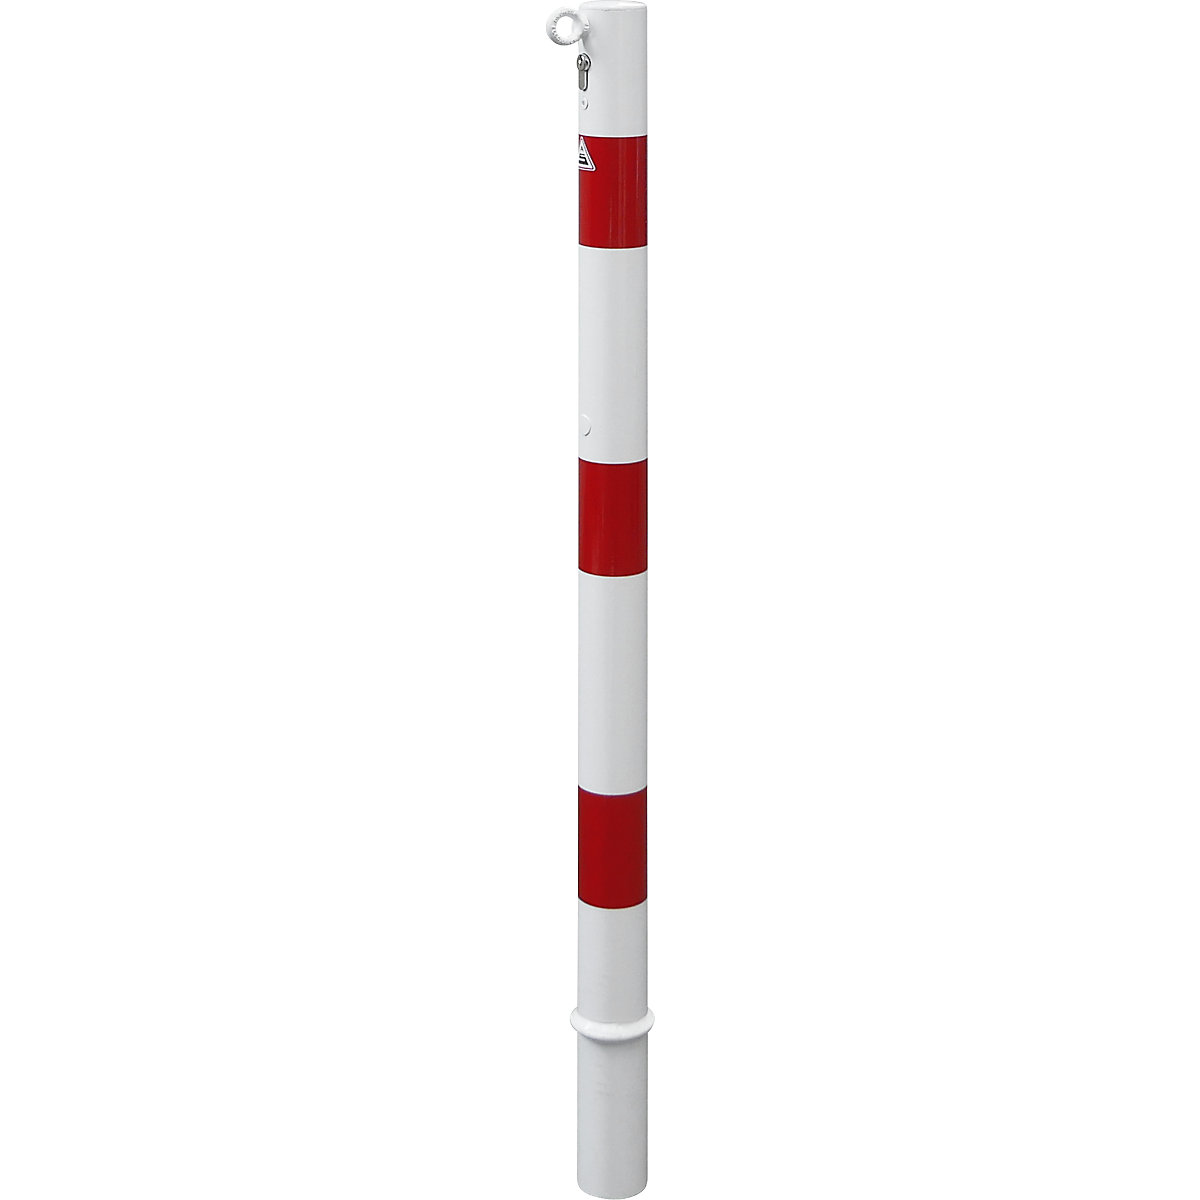 Stupić za ograđivanje, Ø 60 mm, u bijelo / crvenoj boji, s mogućnošću vađenja i profilnim cilindrom, s 1 ušicom